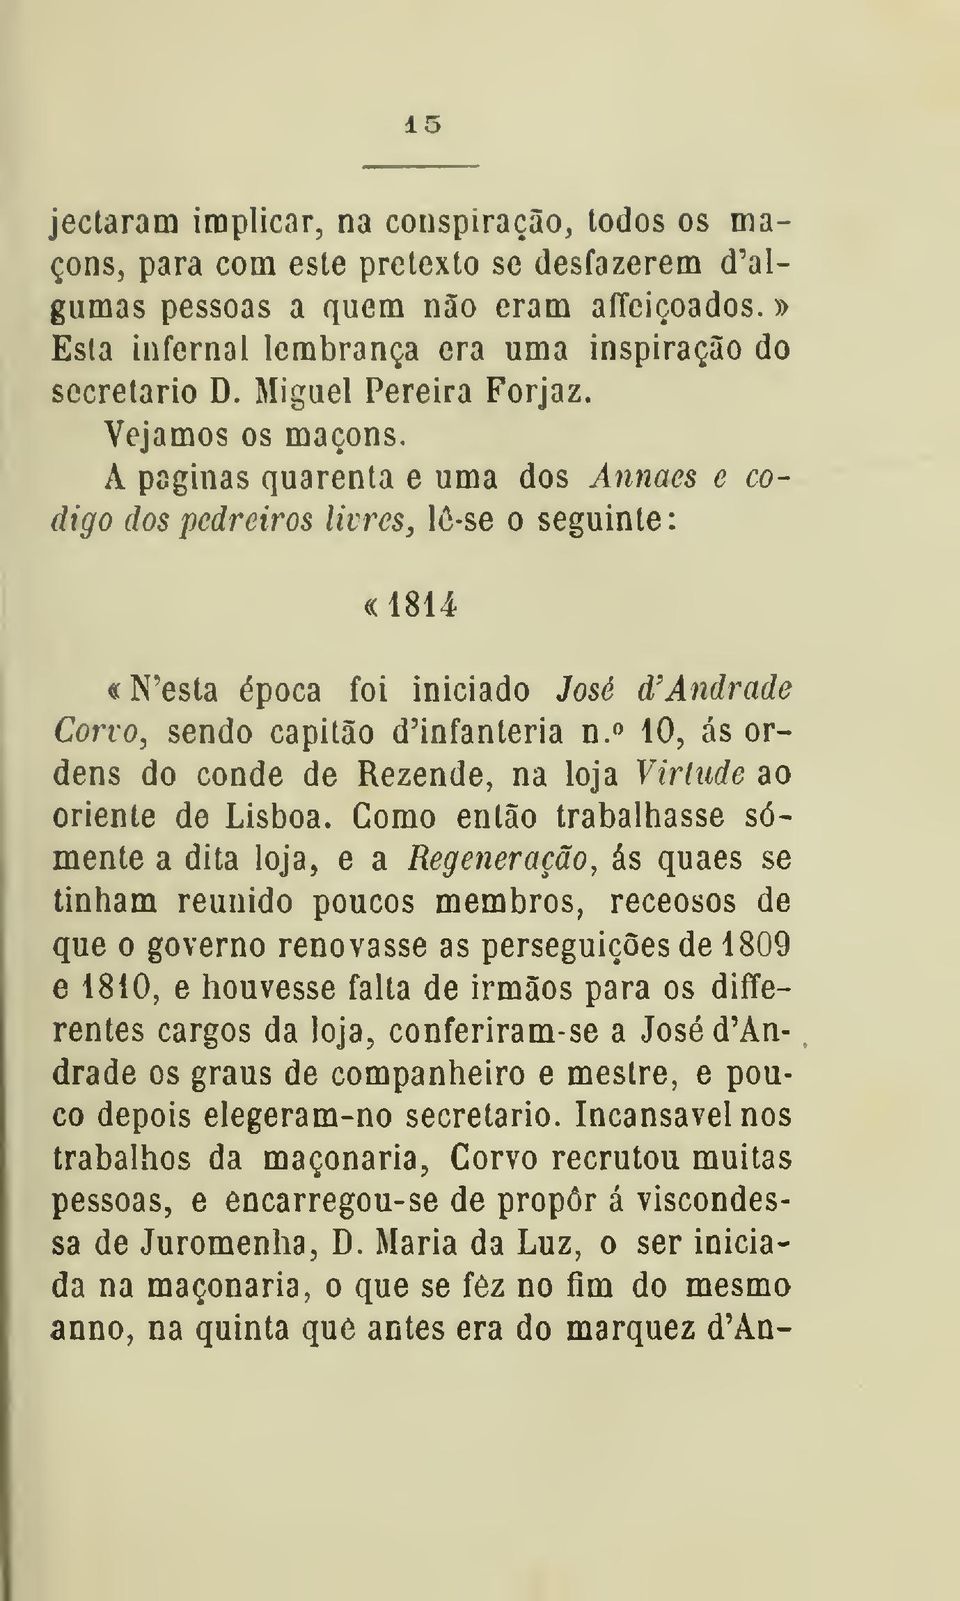 A paginas quarenta e uma dos Annaes e código dos pedreiros livres j lô-se o seguinte «1814 «N'esta época foi iniciado José d'andrade Corvo, sendo capitão d'infanteria n.